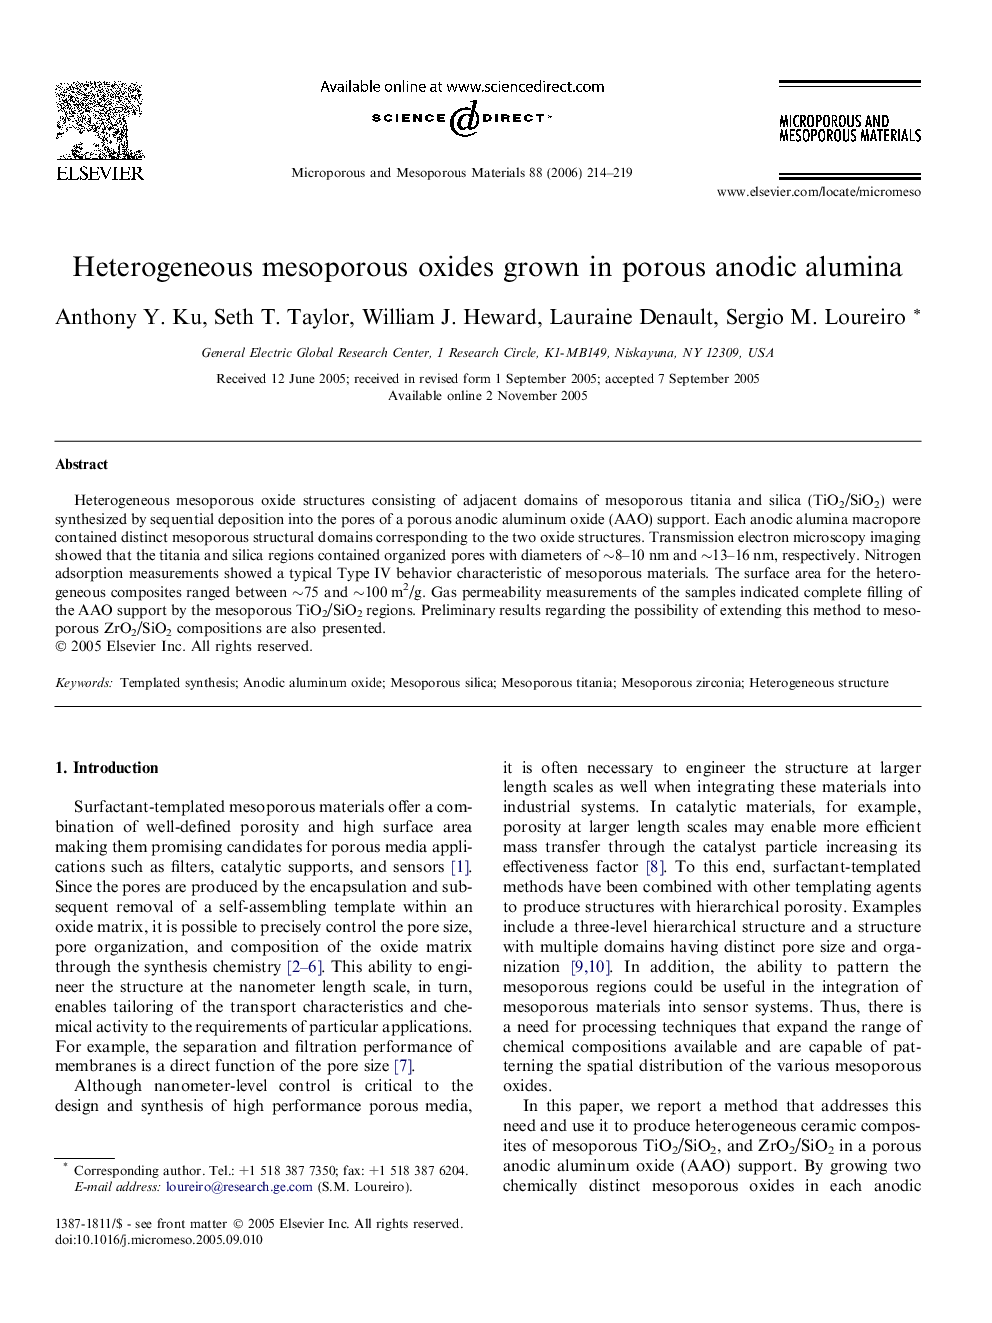 Heterogeneous mesoporous oxides grown in porous anodic alumina